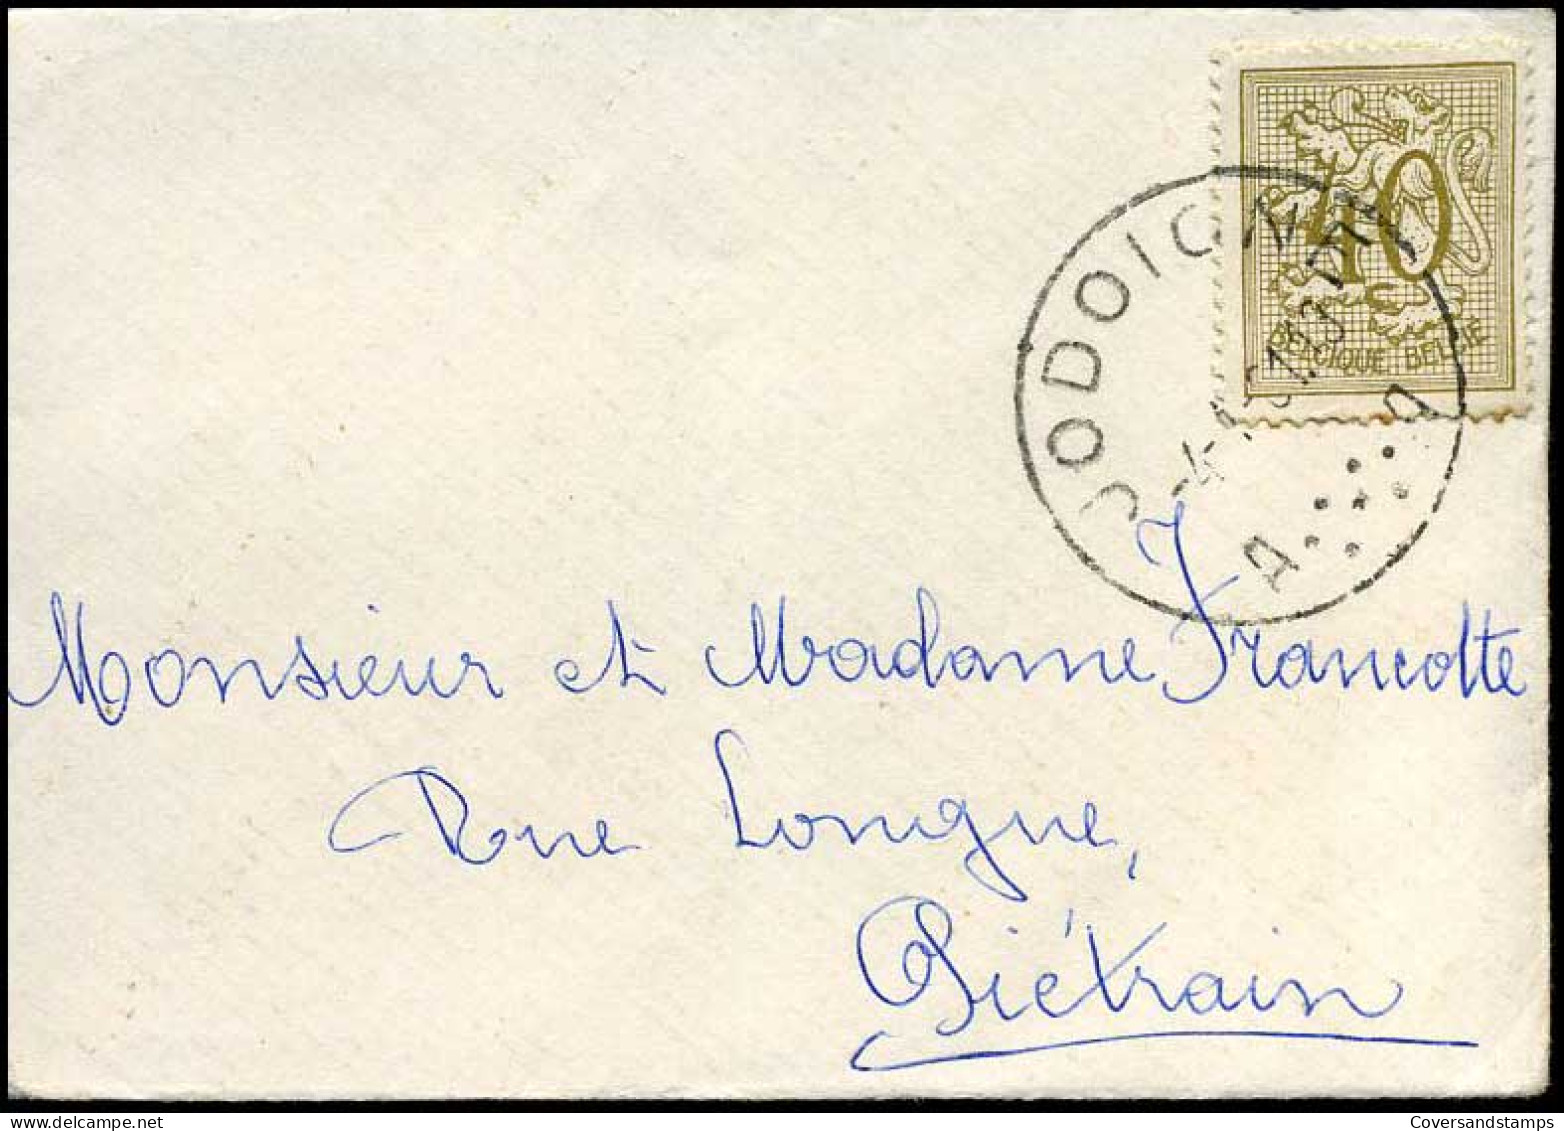 Kleine Envelop / Petite Enveloppe Met N° 853 - 1951-1975 Heraldic Lion